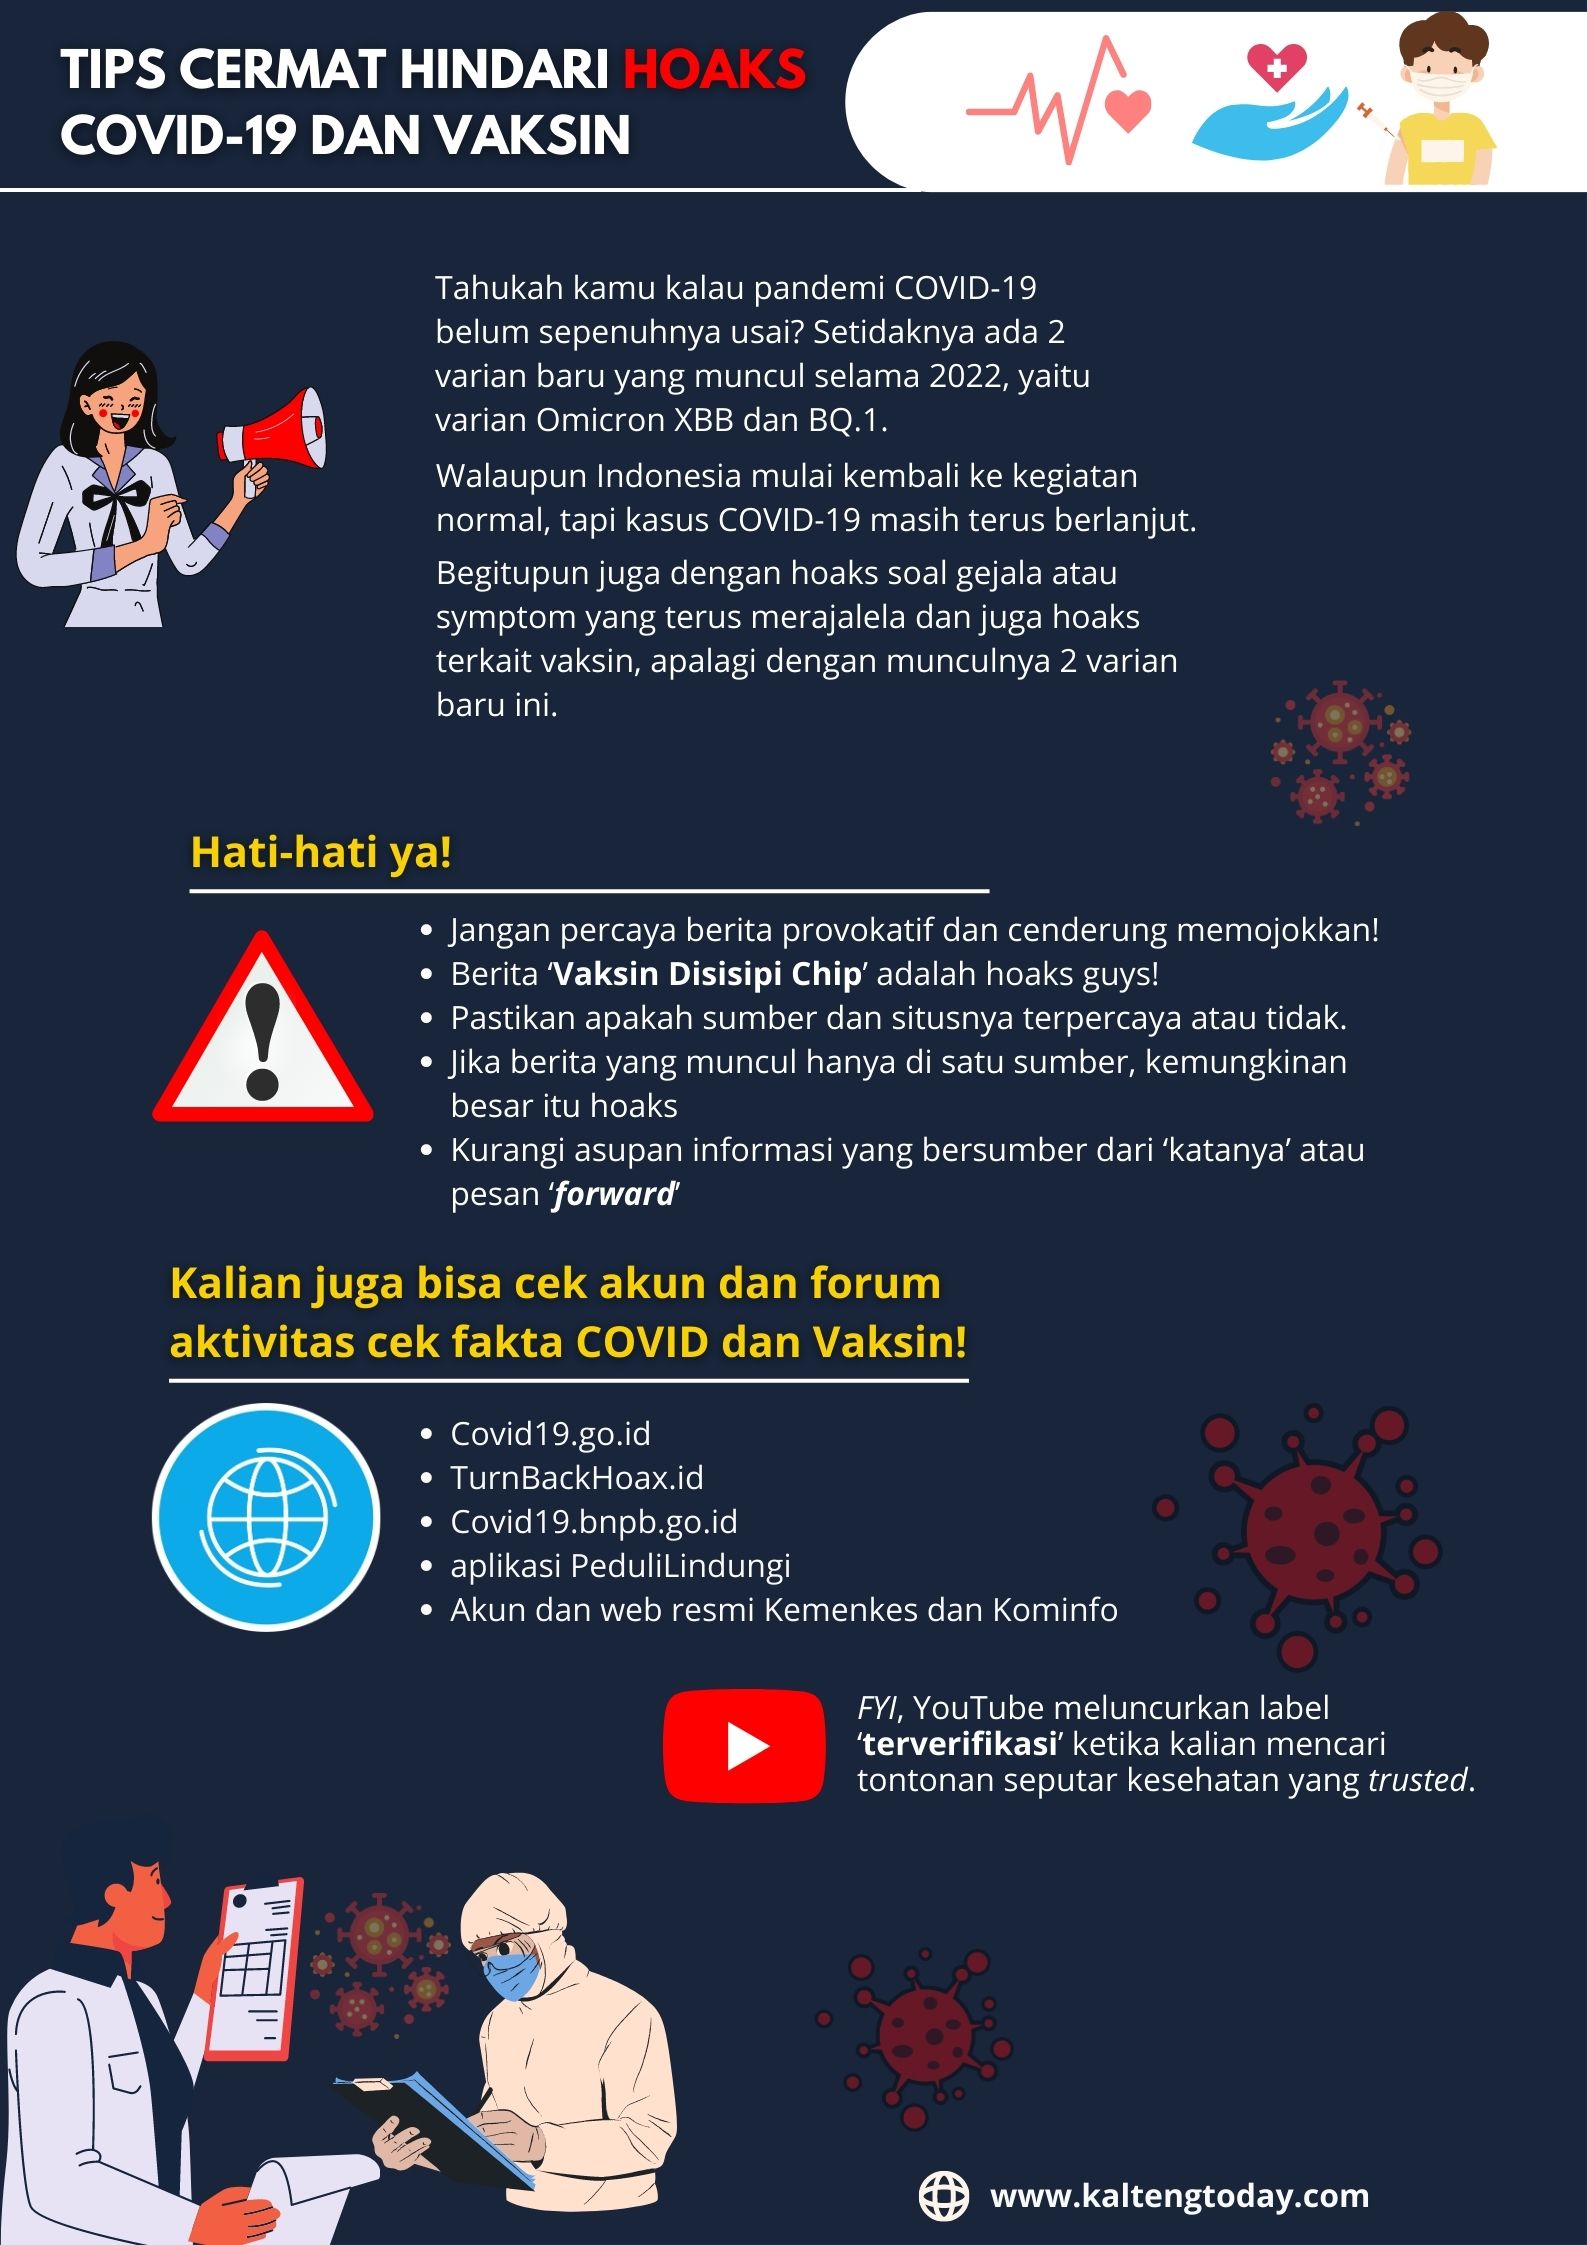 Infografis kaltengtoday.com// Tips Cermat Hindari Hoaks COVID-19 dan Vaksin